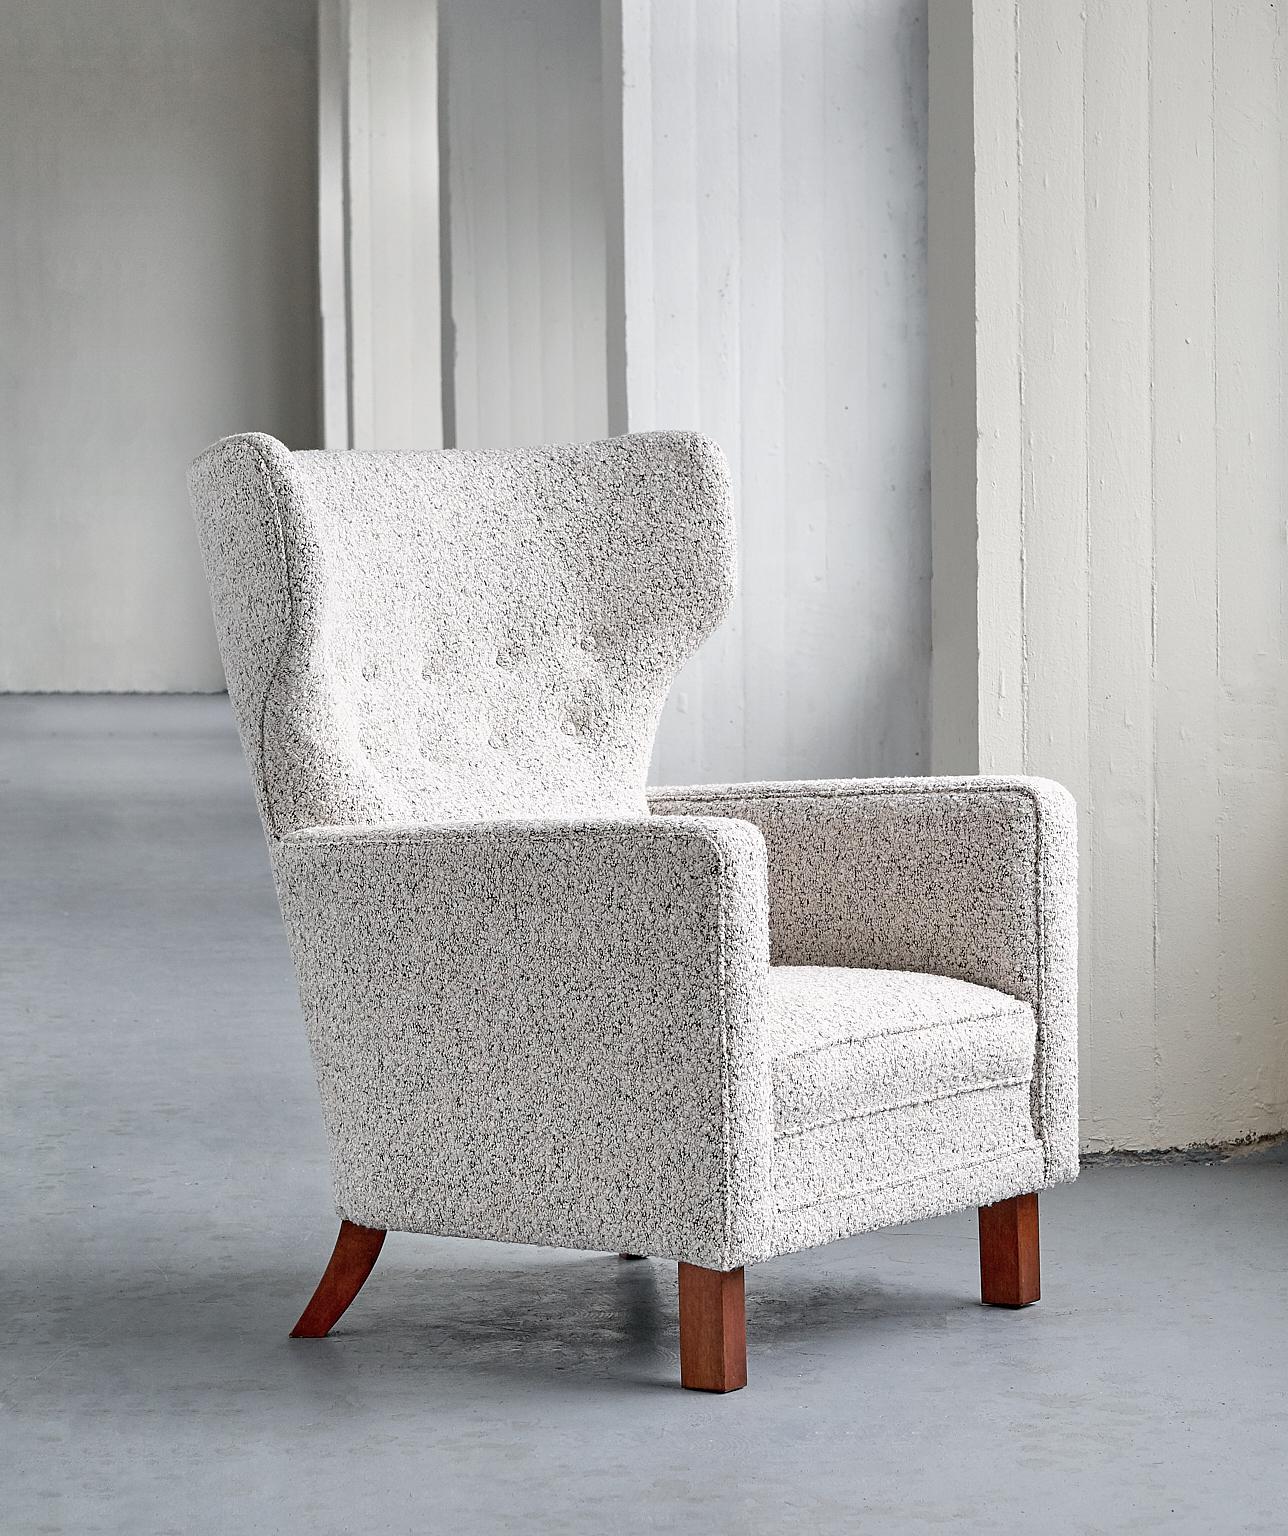 Ce fauteuil rare a été conçu par Paul Boman et produit par sa société Oy Paul Boman AB en Finlande dans les années 1940. Le design offre un beau contraste entre les lignes courbes du haut dossier ailé et les lignes droites des accoudoirs. Les pieds